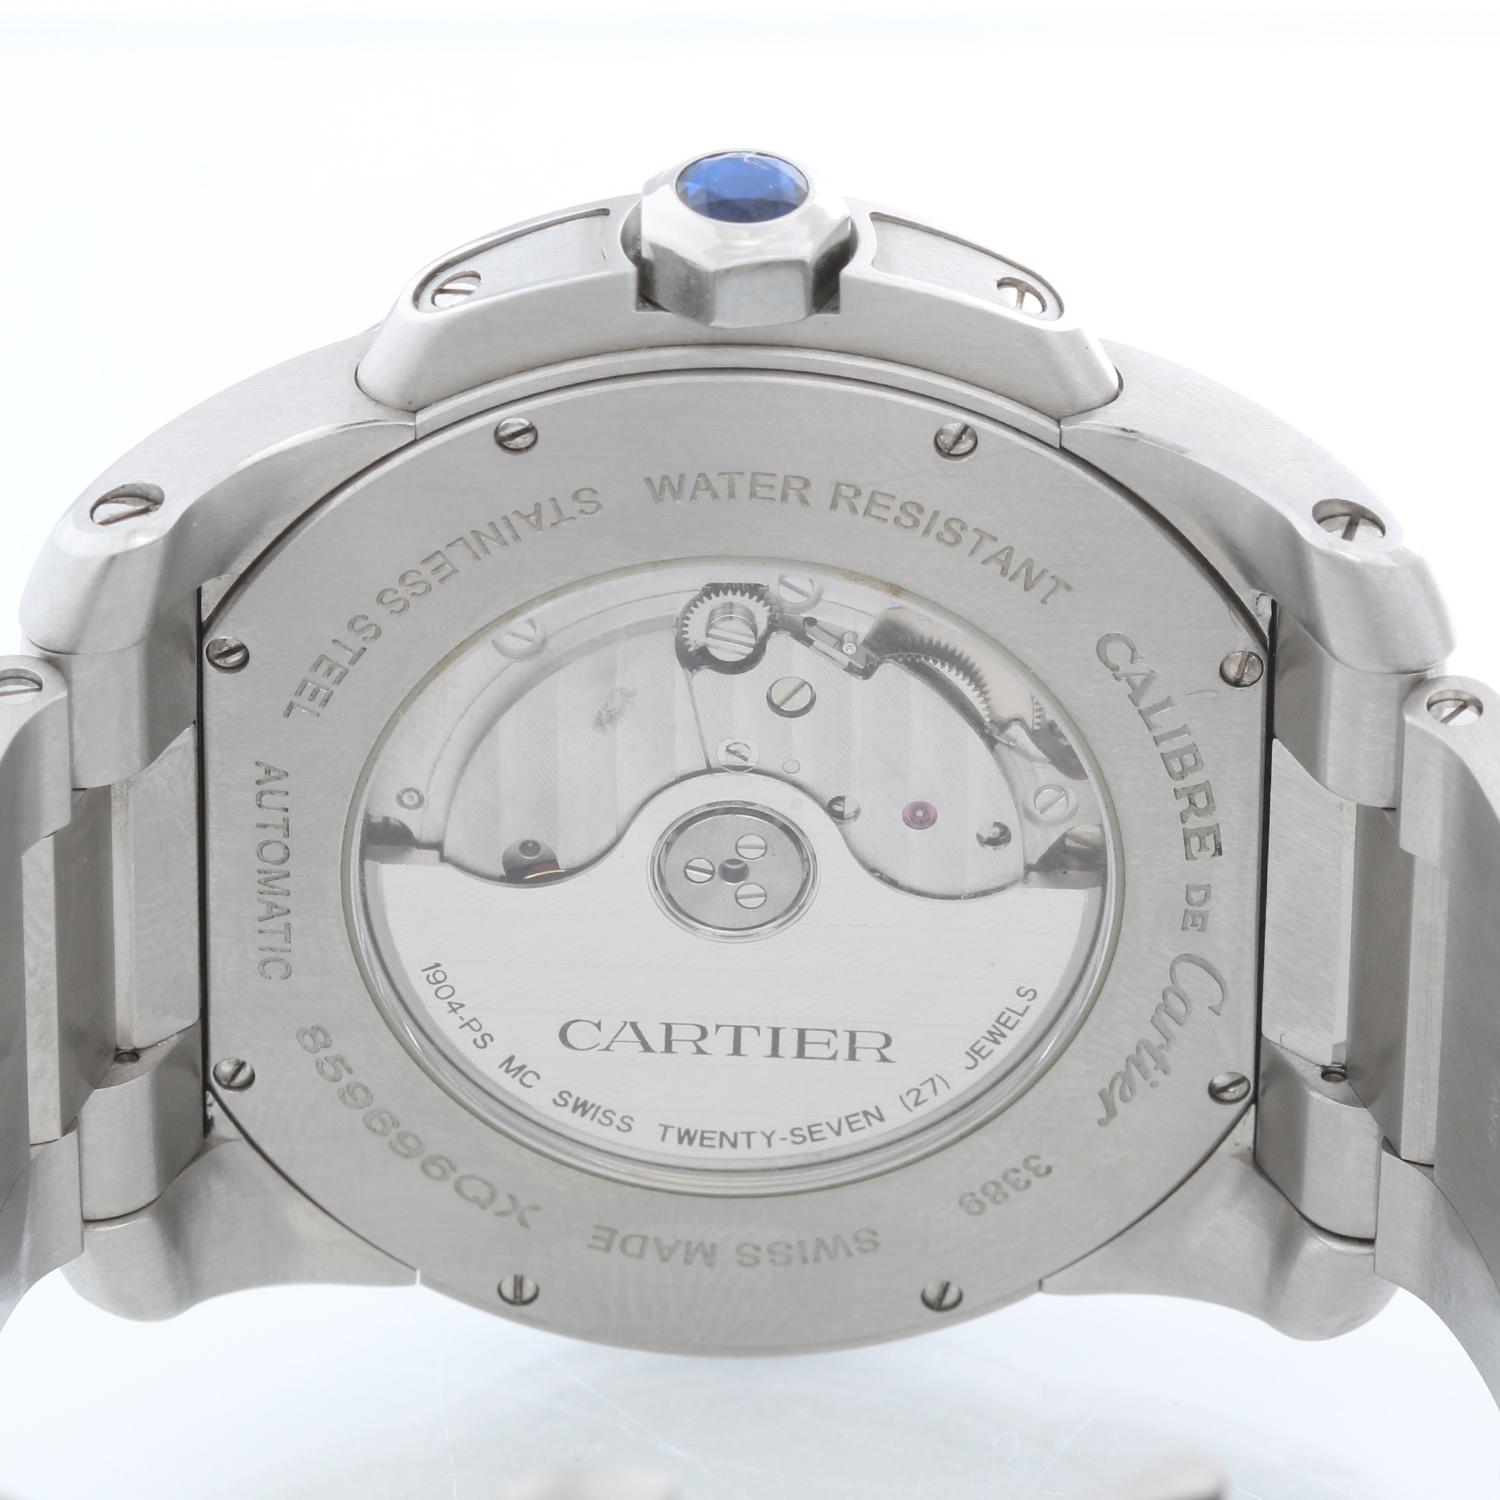 Cartier Calibre de Cartier Men's Stainless Steel Watch W7100037 3389 1